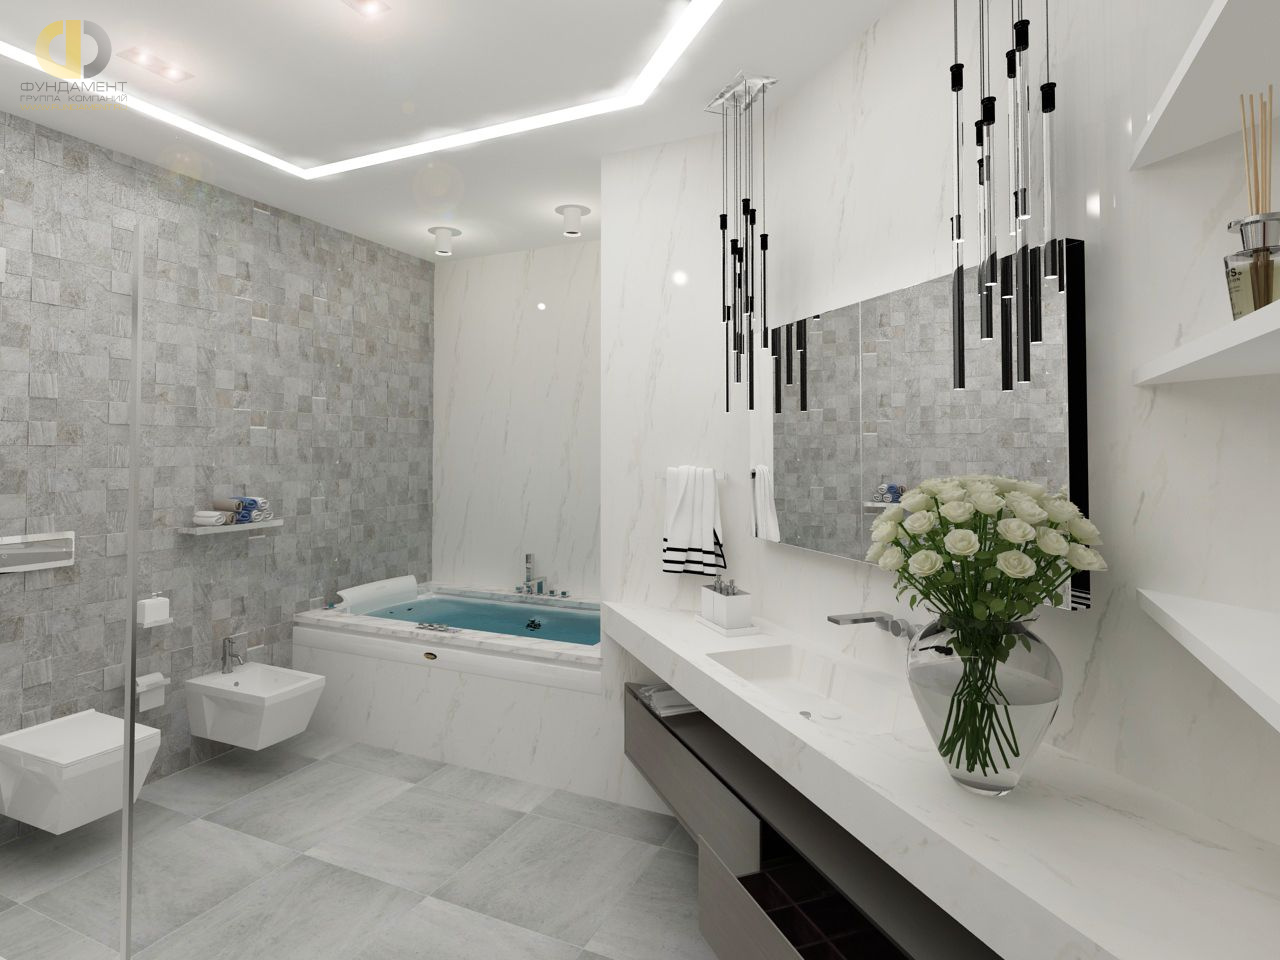 Интерьер ванной комнаты в квартире в стиле ар-деко